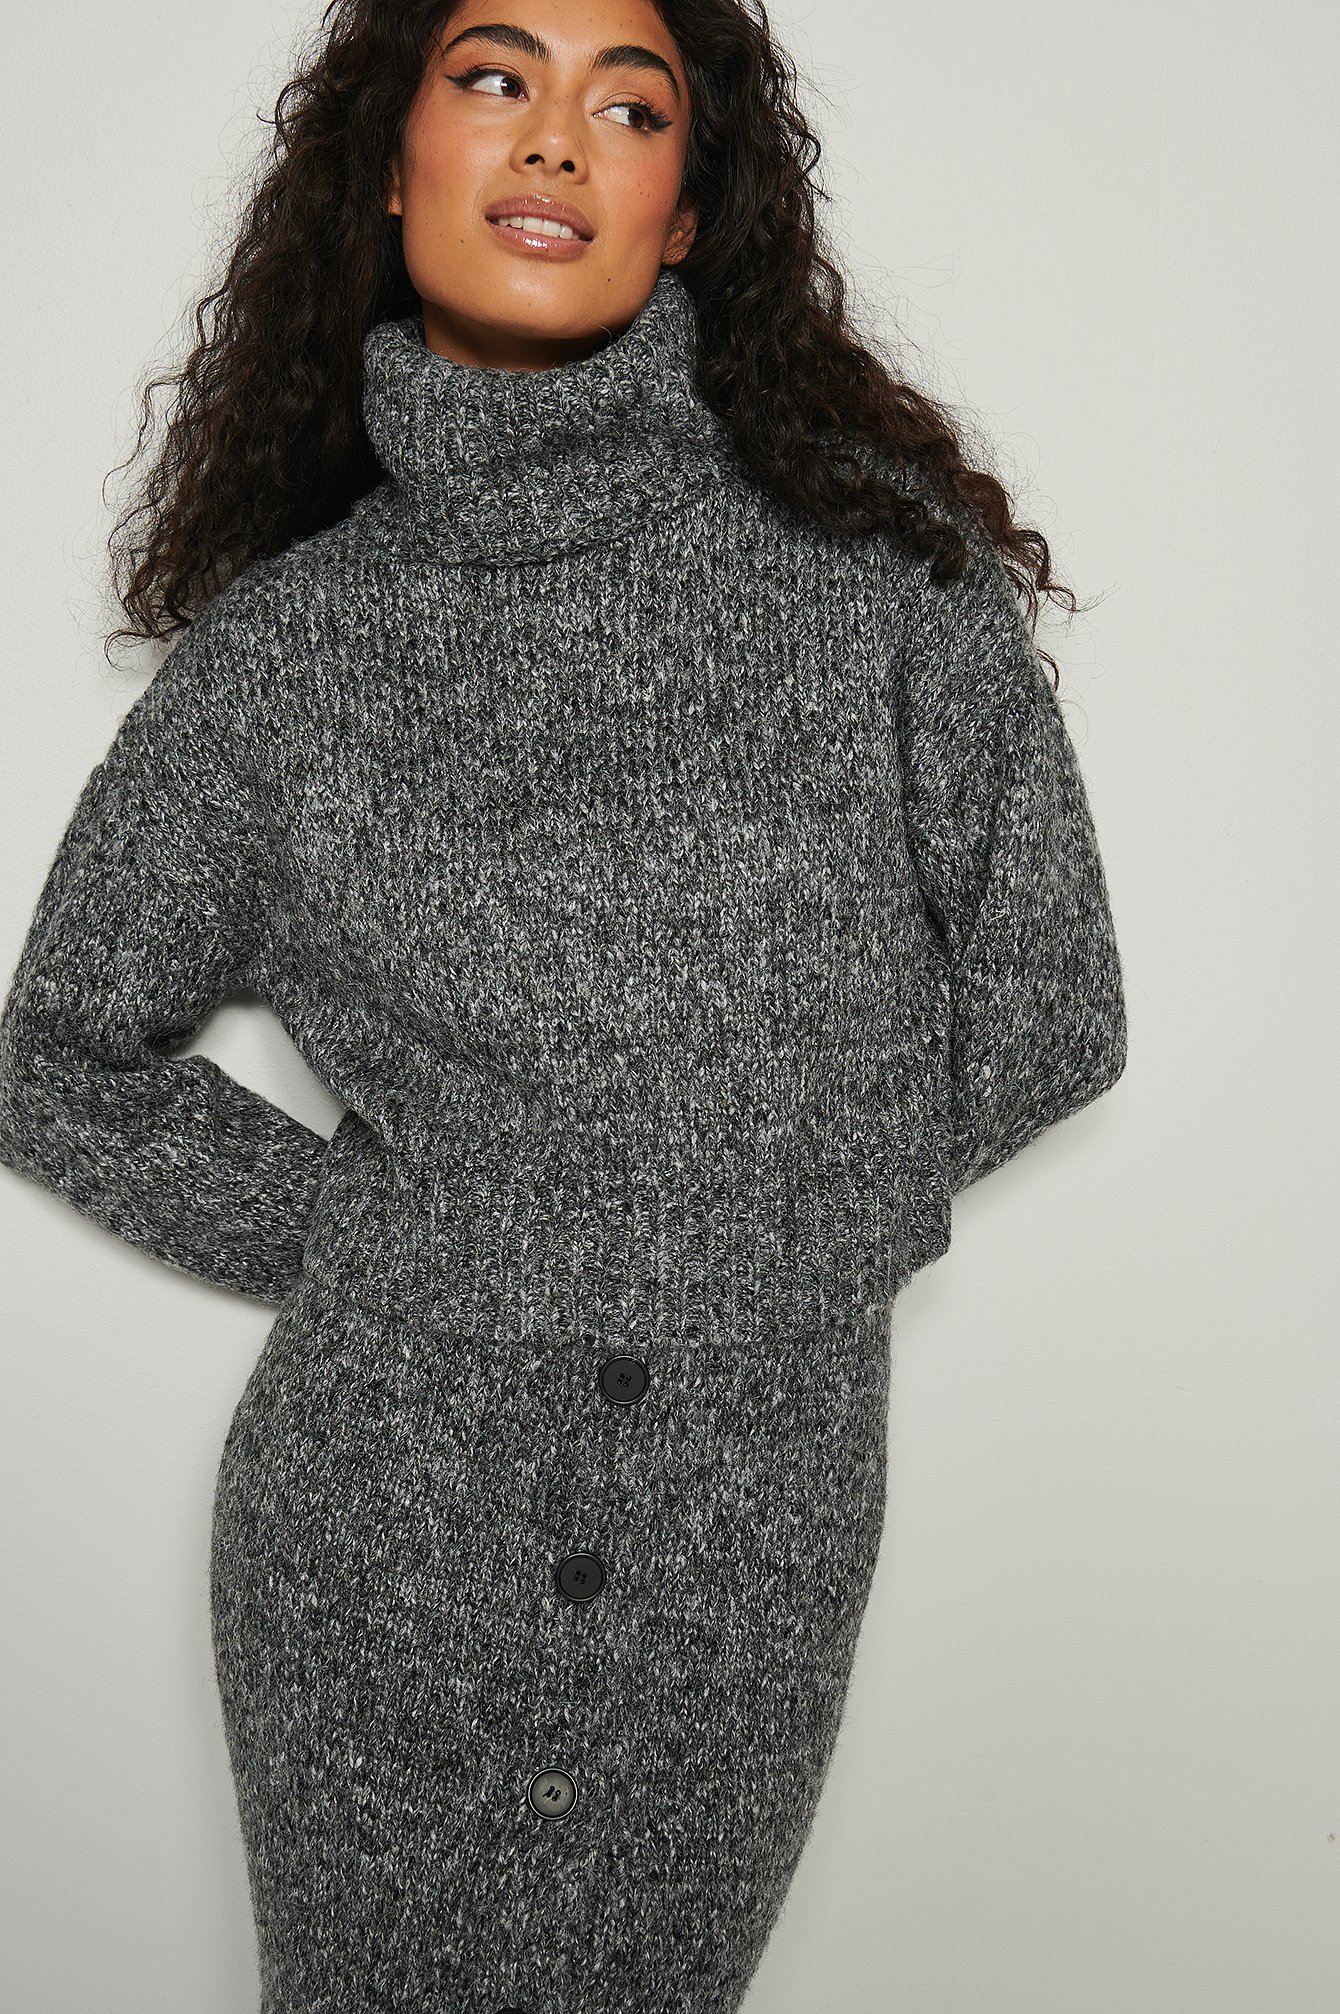 Black Melange Knitted Melange High Neck Sweater